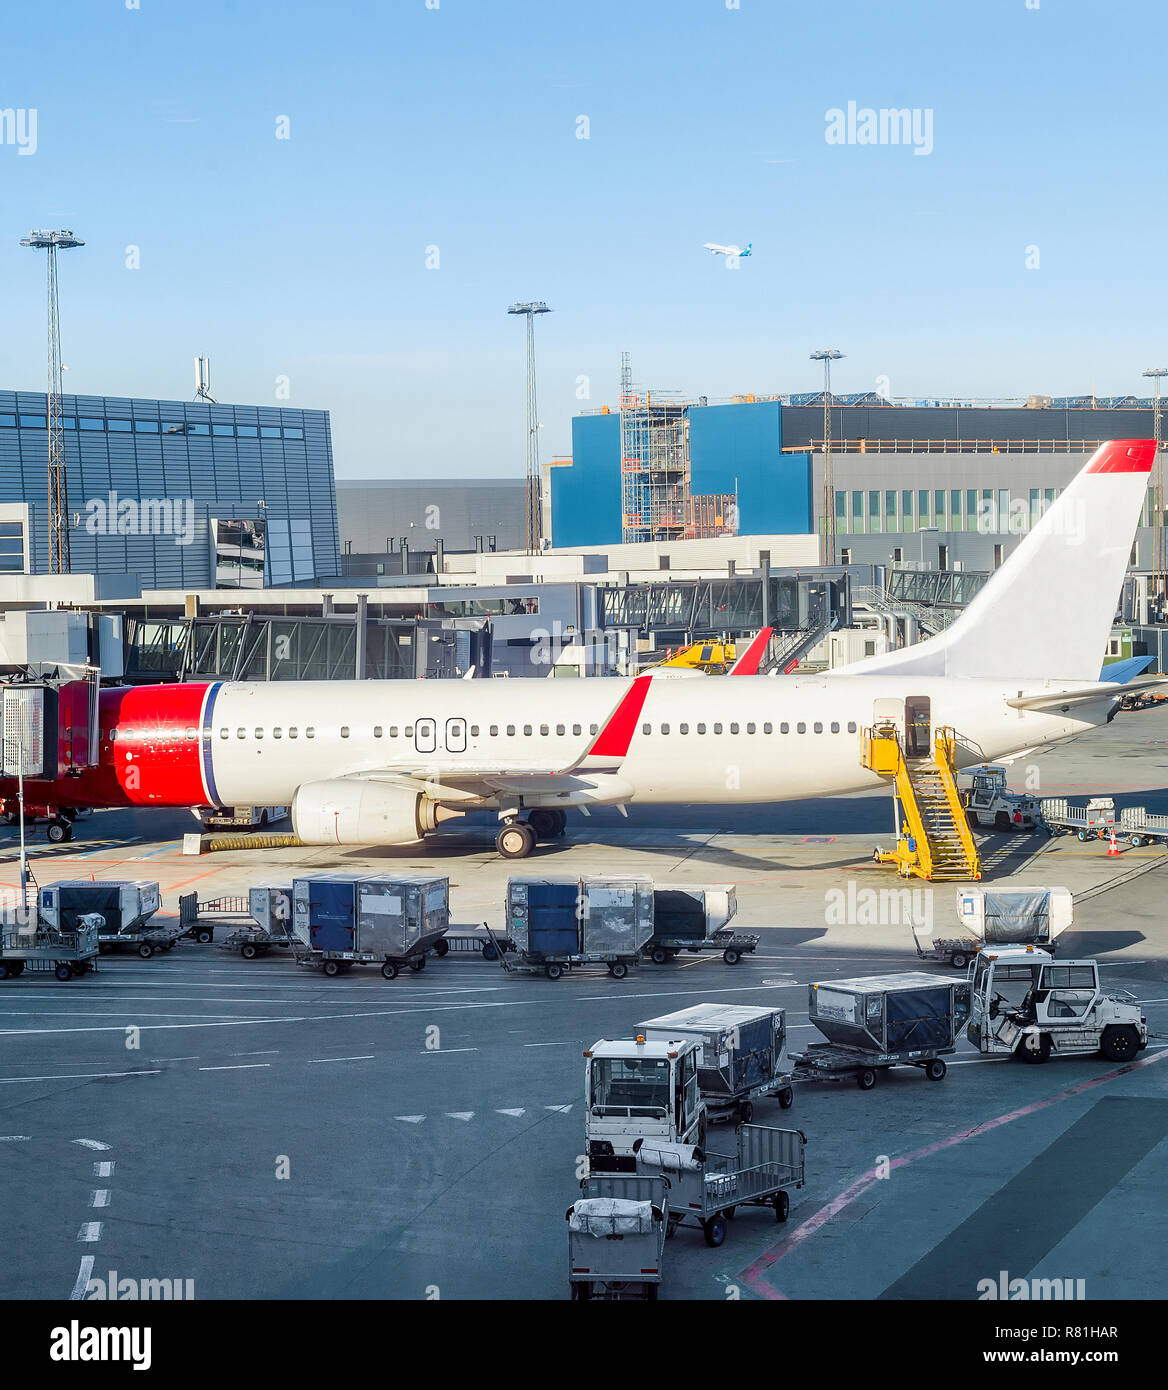 Avion chargement parqué par bâtiment de l'aéroport de Copenhague, les escaliers et les porte-bagages à proximité Banque D'Images